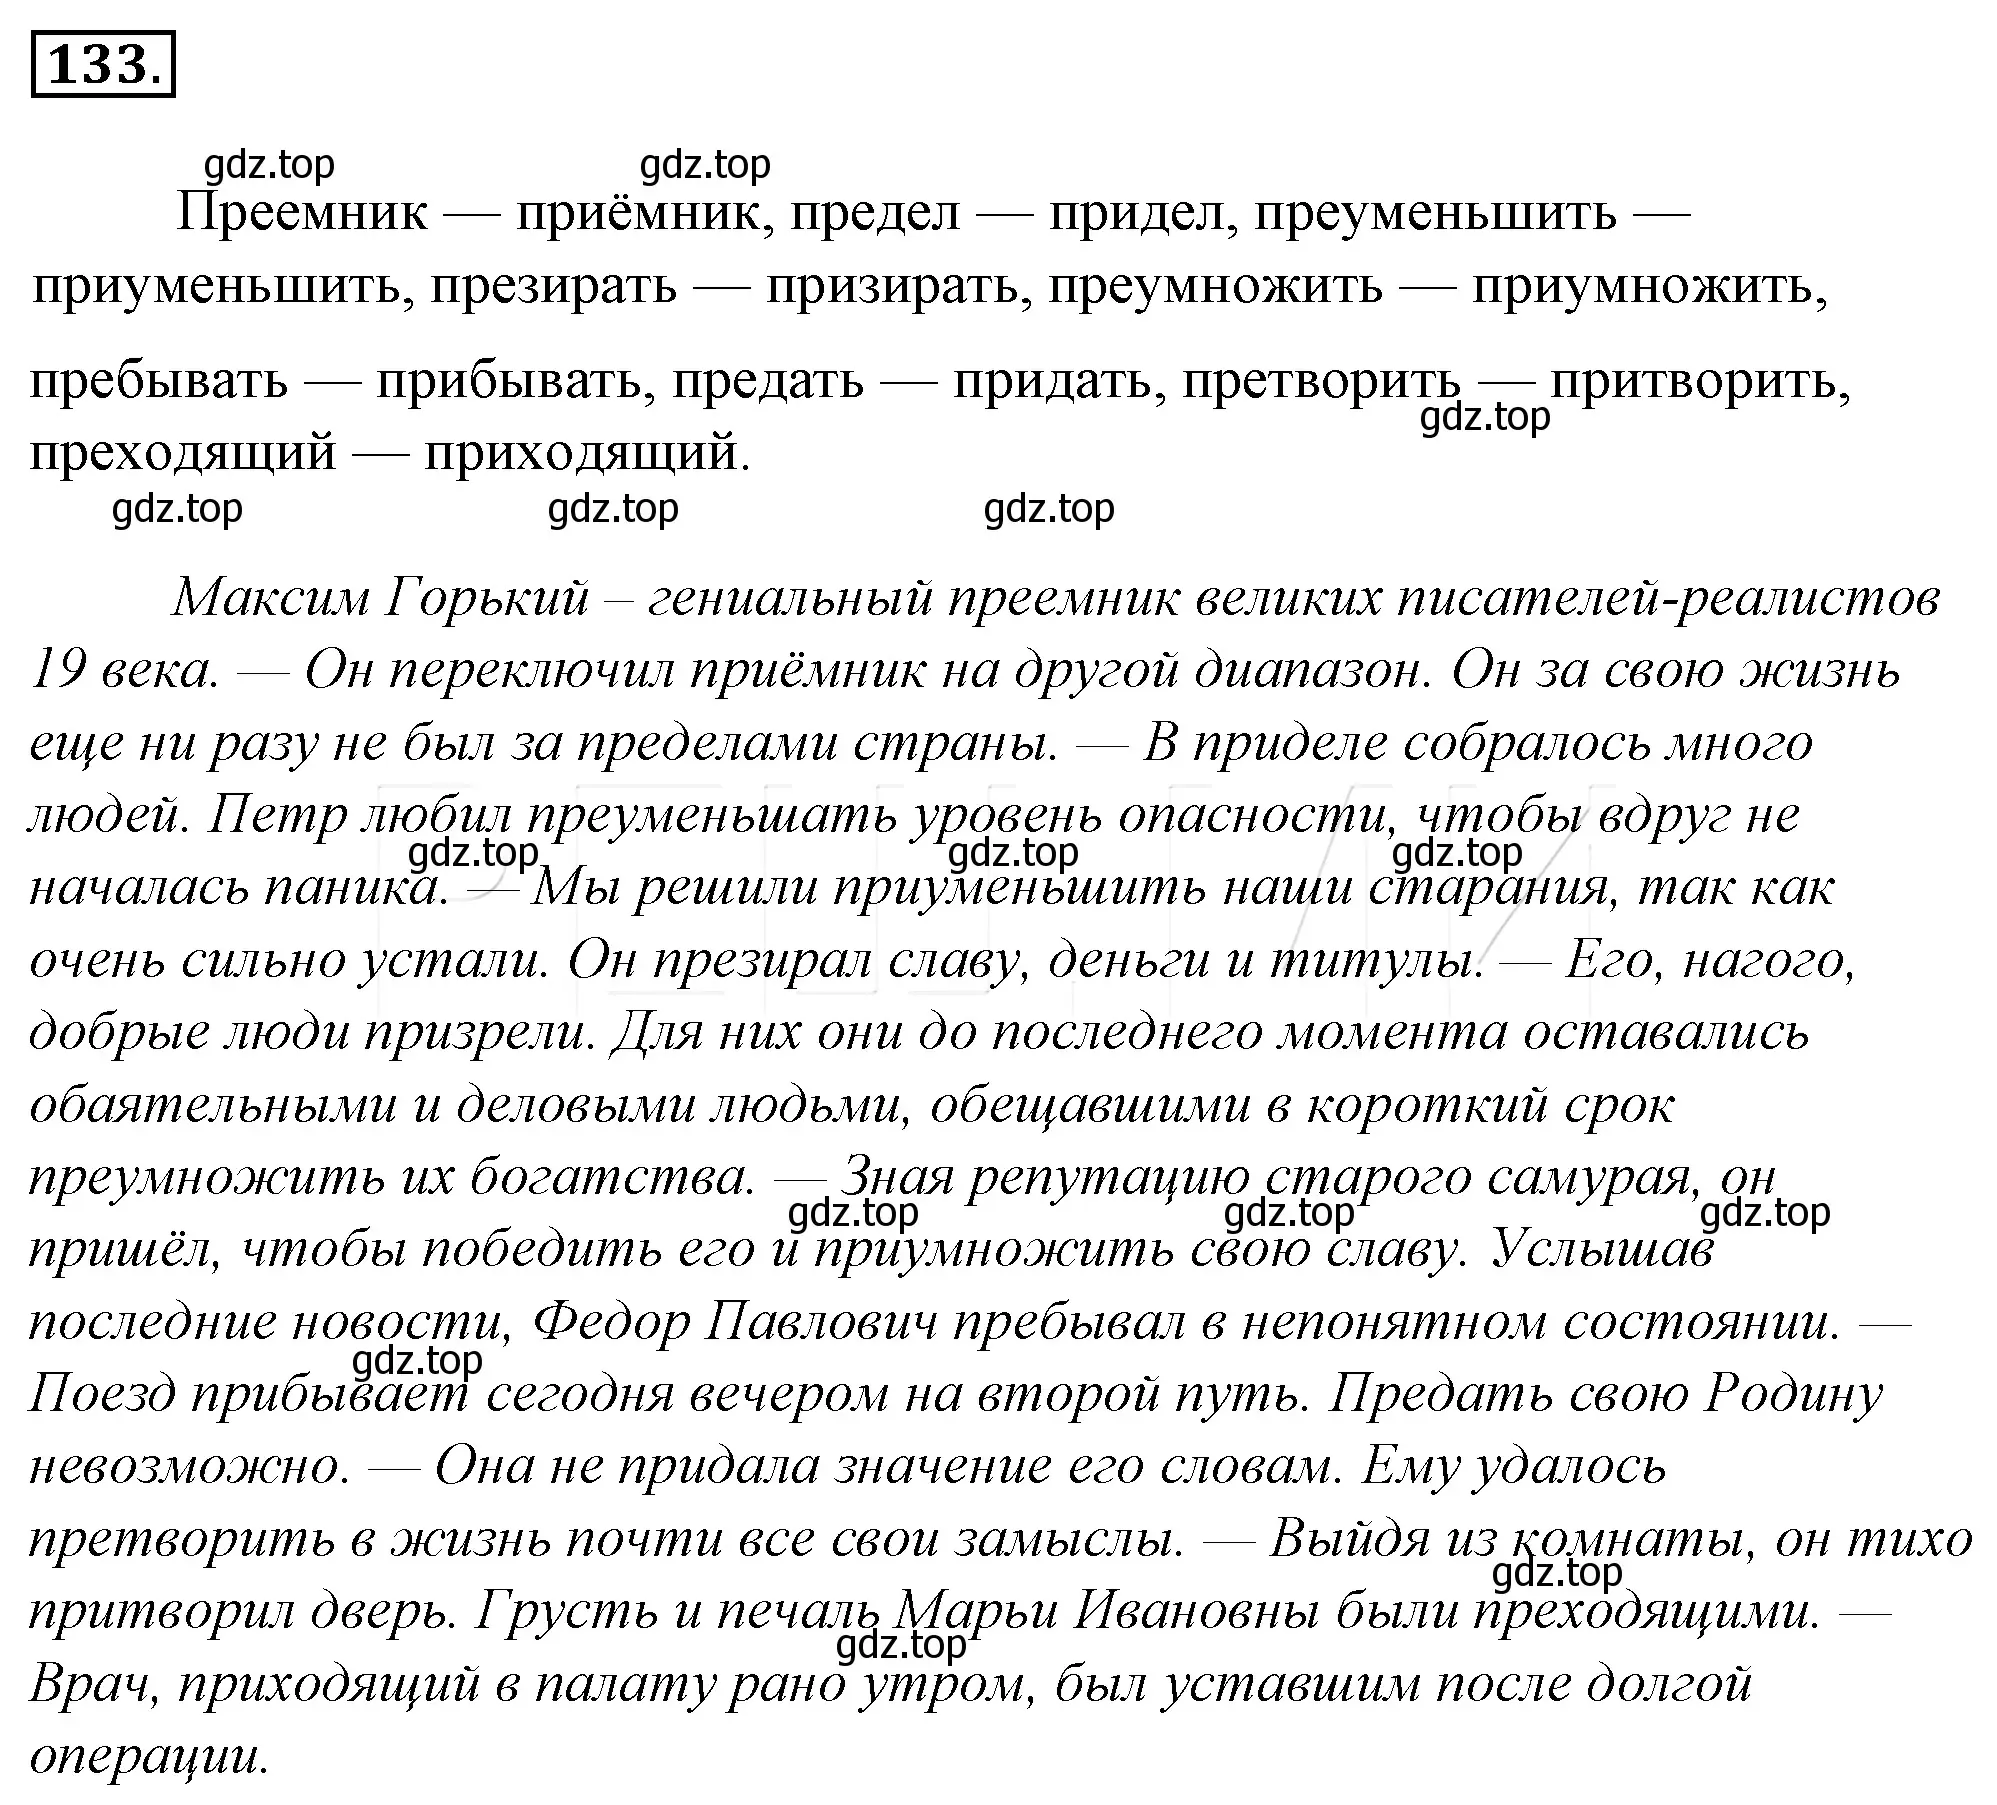 Решение 4. номер 157 (страница 144) гдз по русскому языку 10-11 класс Гольцова, Шамшин, учебник 1 часть